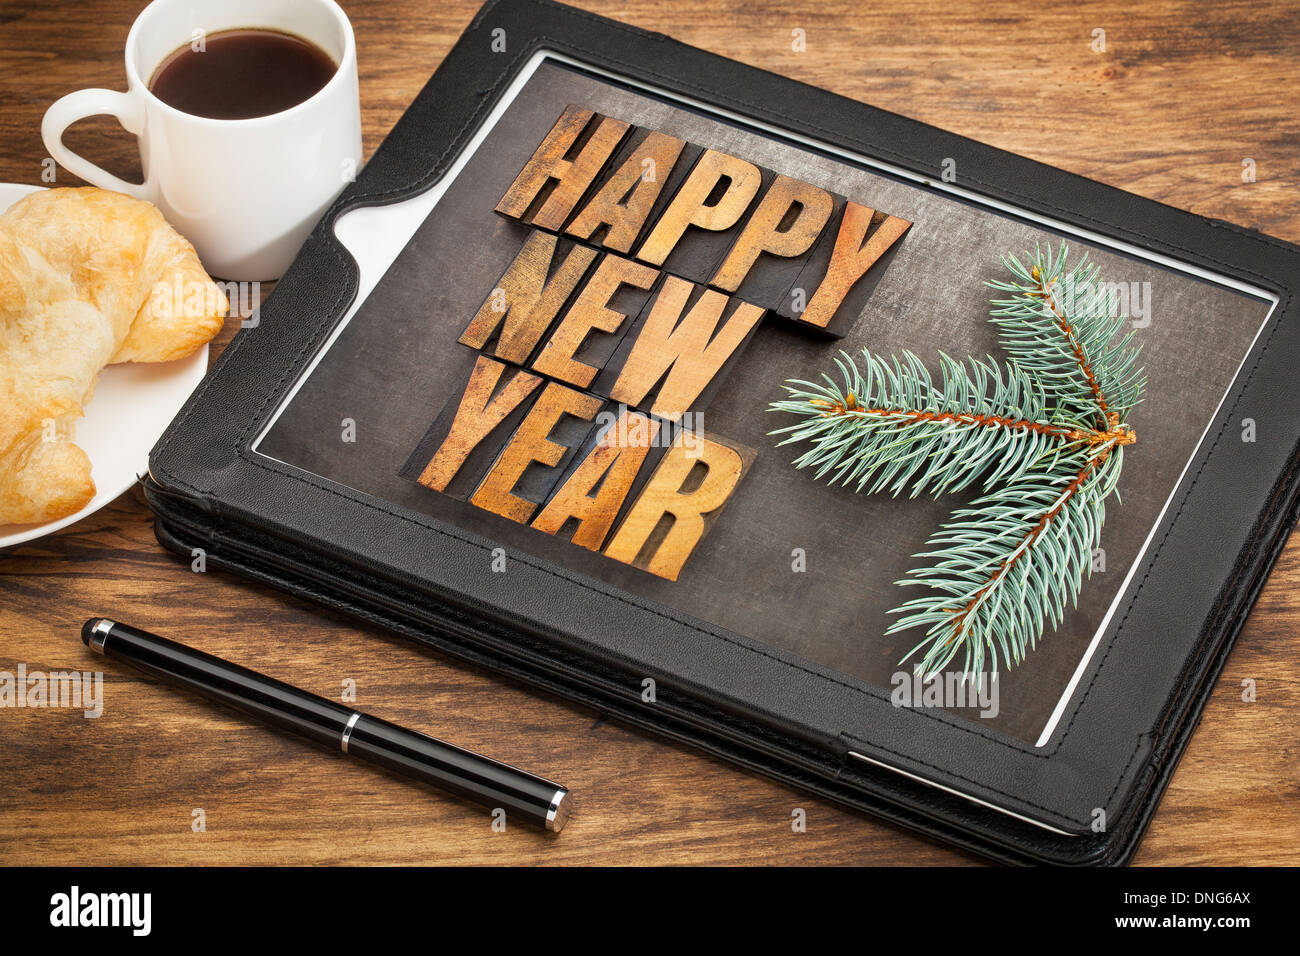 Bonne année dans la typographie type bois sur un ordinateur tablette numérique avec stylet, tasse de café et pâtisserie Banque D'Images